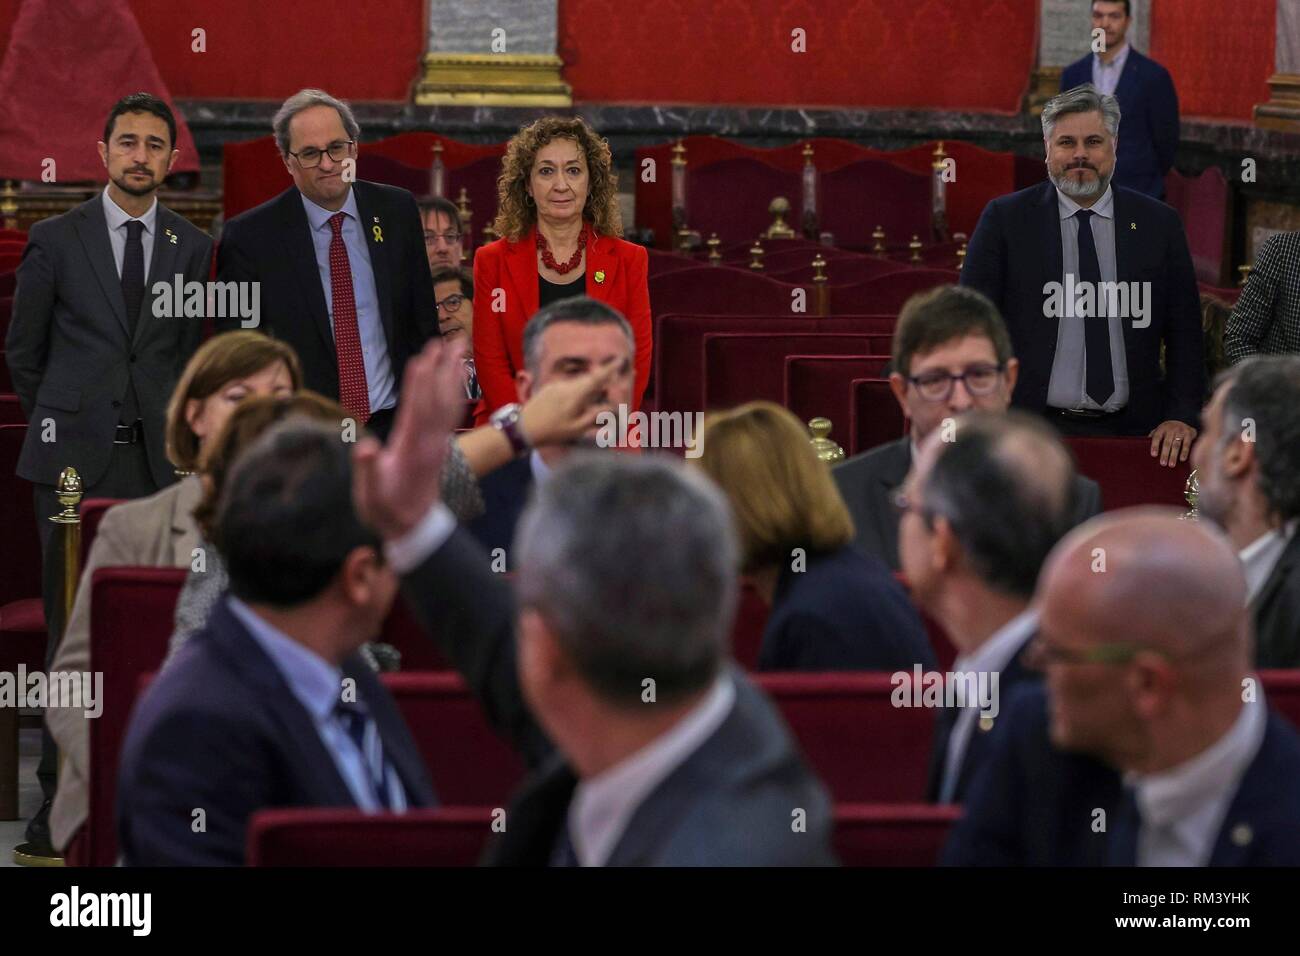 GRAF5792 MADRID, 12/02/2019.- El presidente de la Generalitat Quim Torra (2i, detrás), acompañado por el consejero de Territorio, Damiá Calvet (i) y la consejera de Justicia, Ester Capella (d), saluda a los líderes independentistas acusados por el proceso soberanista catalán que derivó en la celebración del 1-O y la declaración unilateral de independencia de Cataluña (DUI), durante la primera jornada del juicio del 'procés' celebrada este martes en el Tribunal Supremo. EFE/Emilio Naranjo ***POOL***  'Proces ' trial against Catalan separatist leaders in Supreme Court in Madrid, Spain, February  Stock Photo